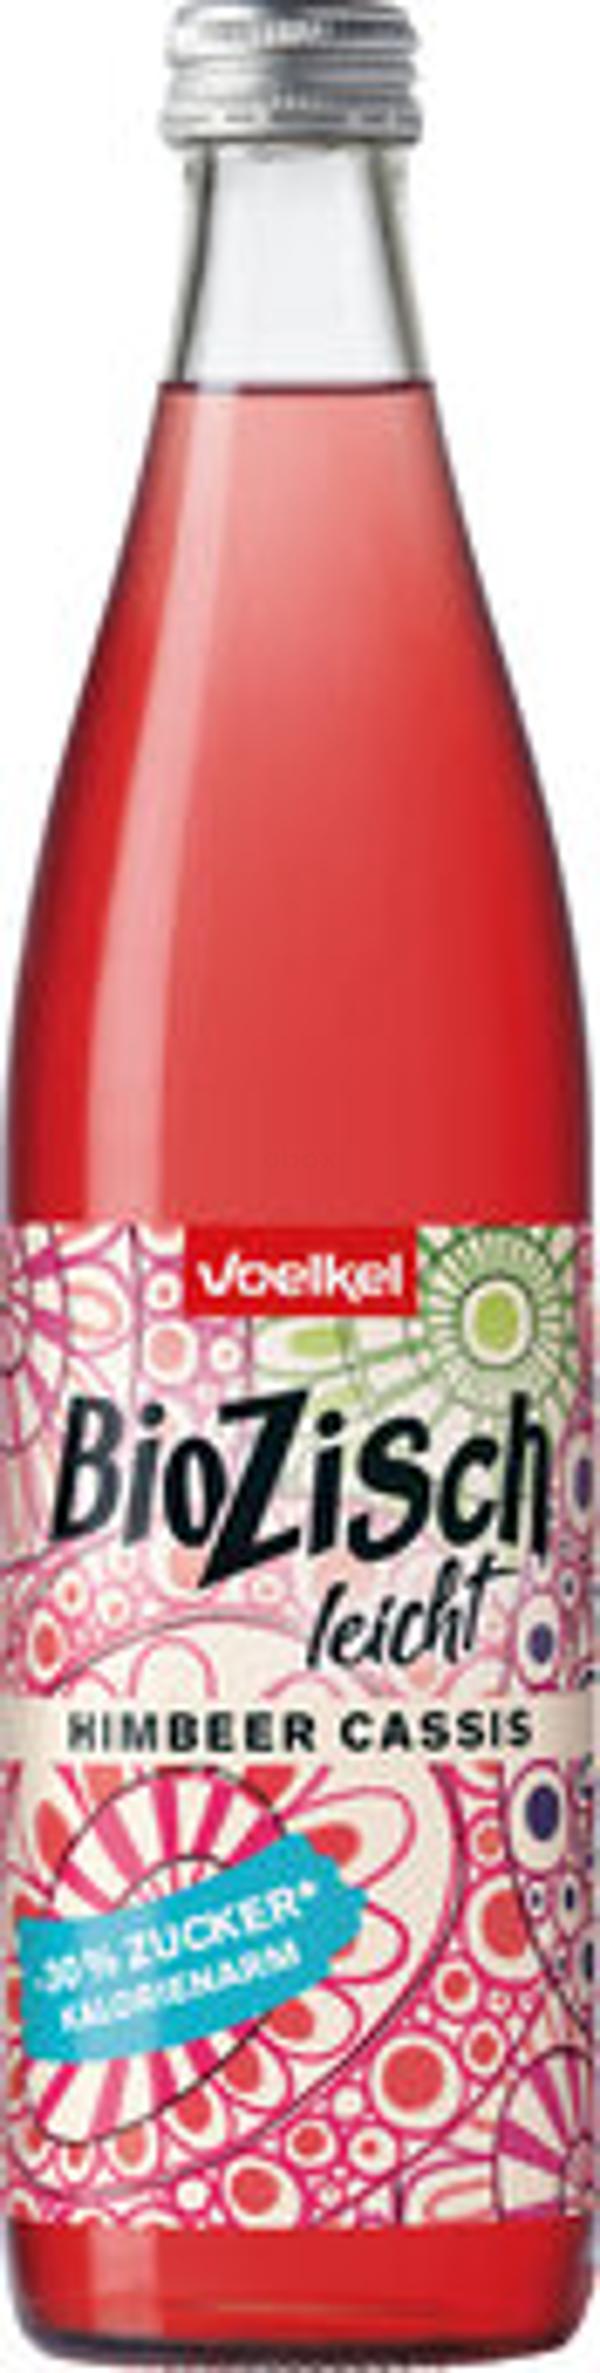 Produktfoto zu Bio Zisch Leicht - Himbeer Cassis, 0,5 l